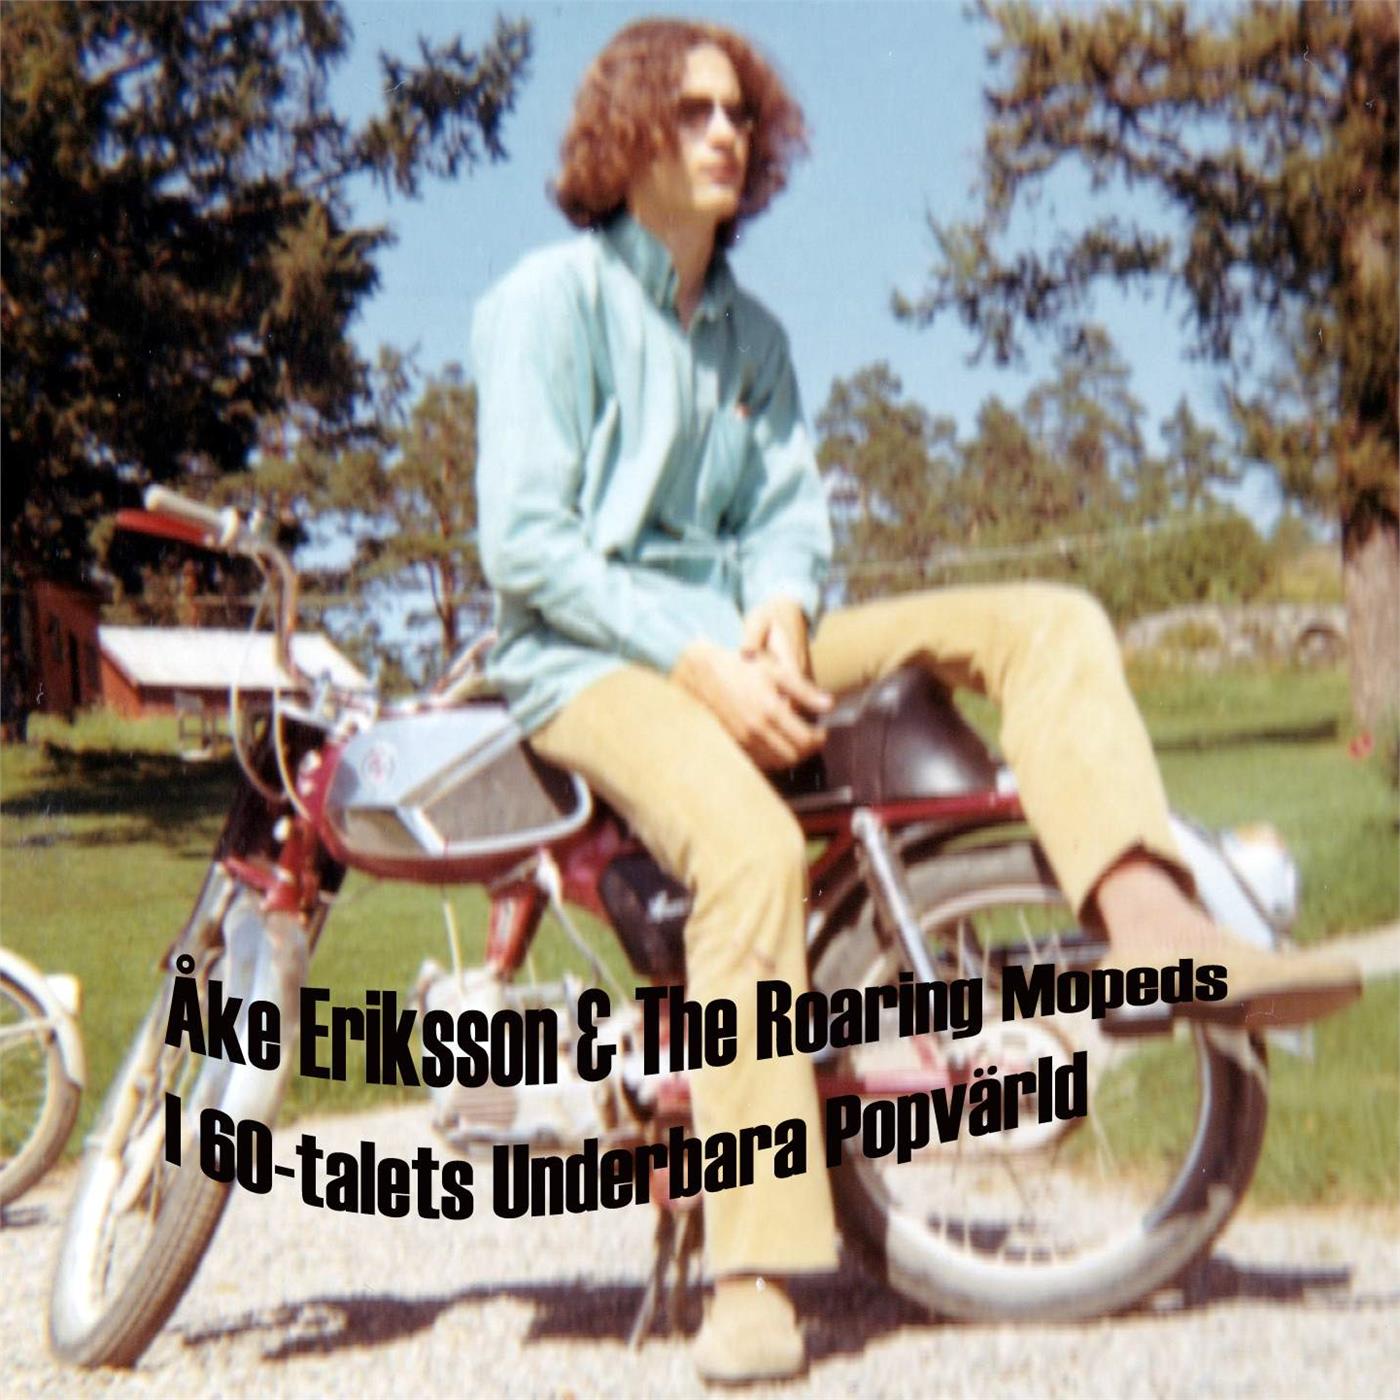 Åke Eriksson & The Roaring Mopeds